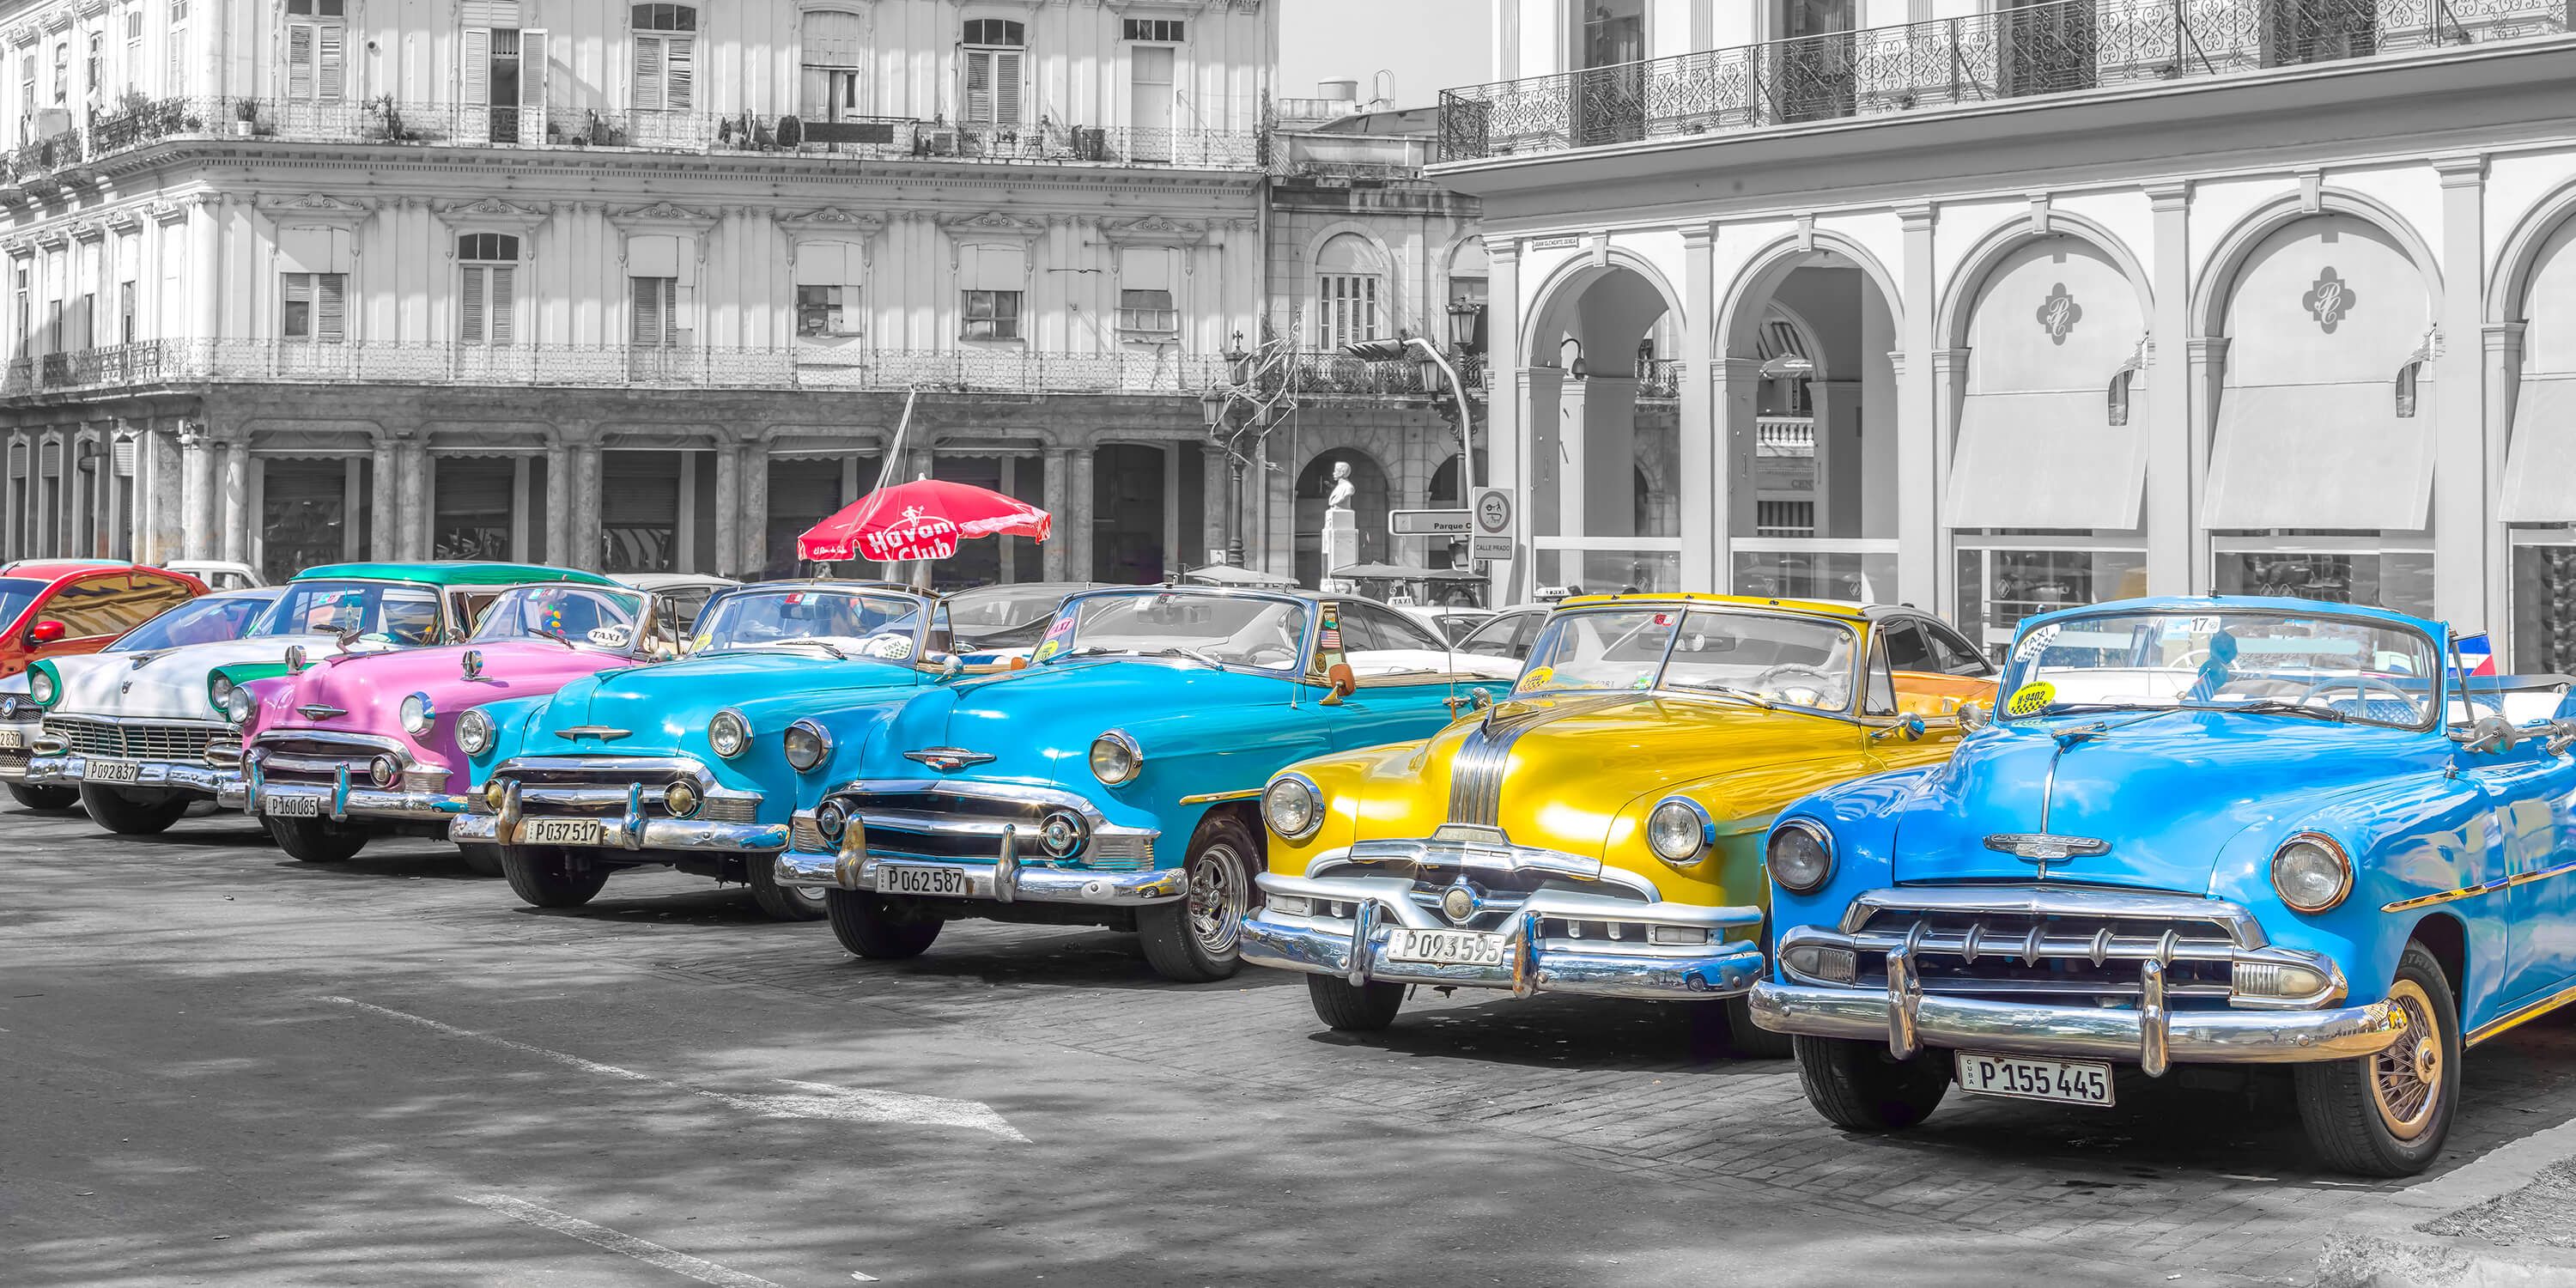  Tradycyjne kubańskie samochody